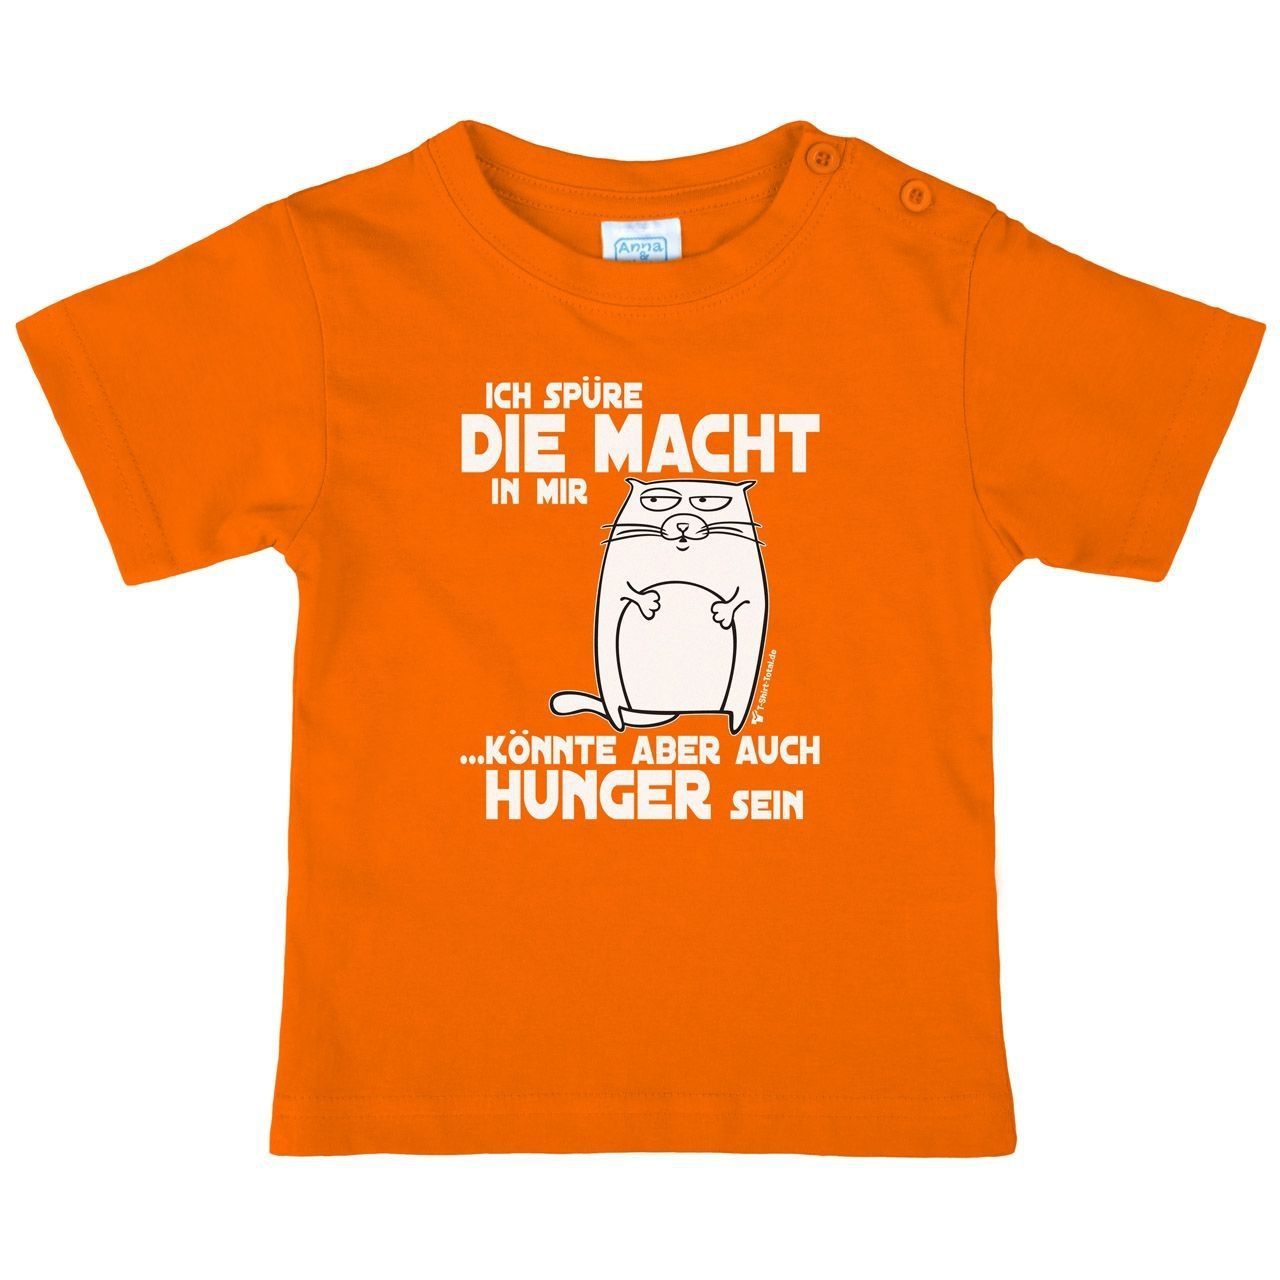 Spüre die Macht Kinder T-Shirt orange 104